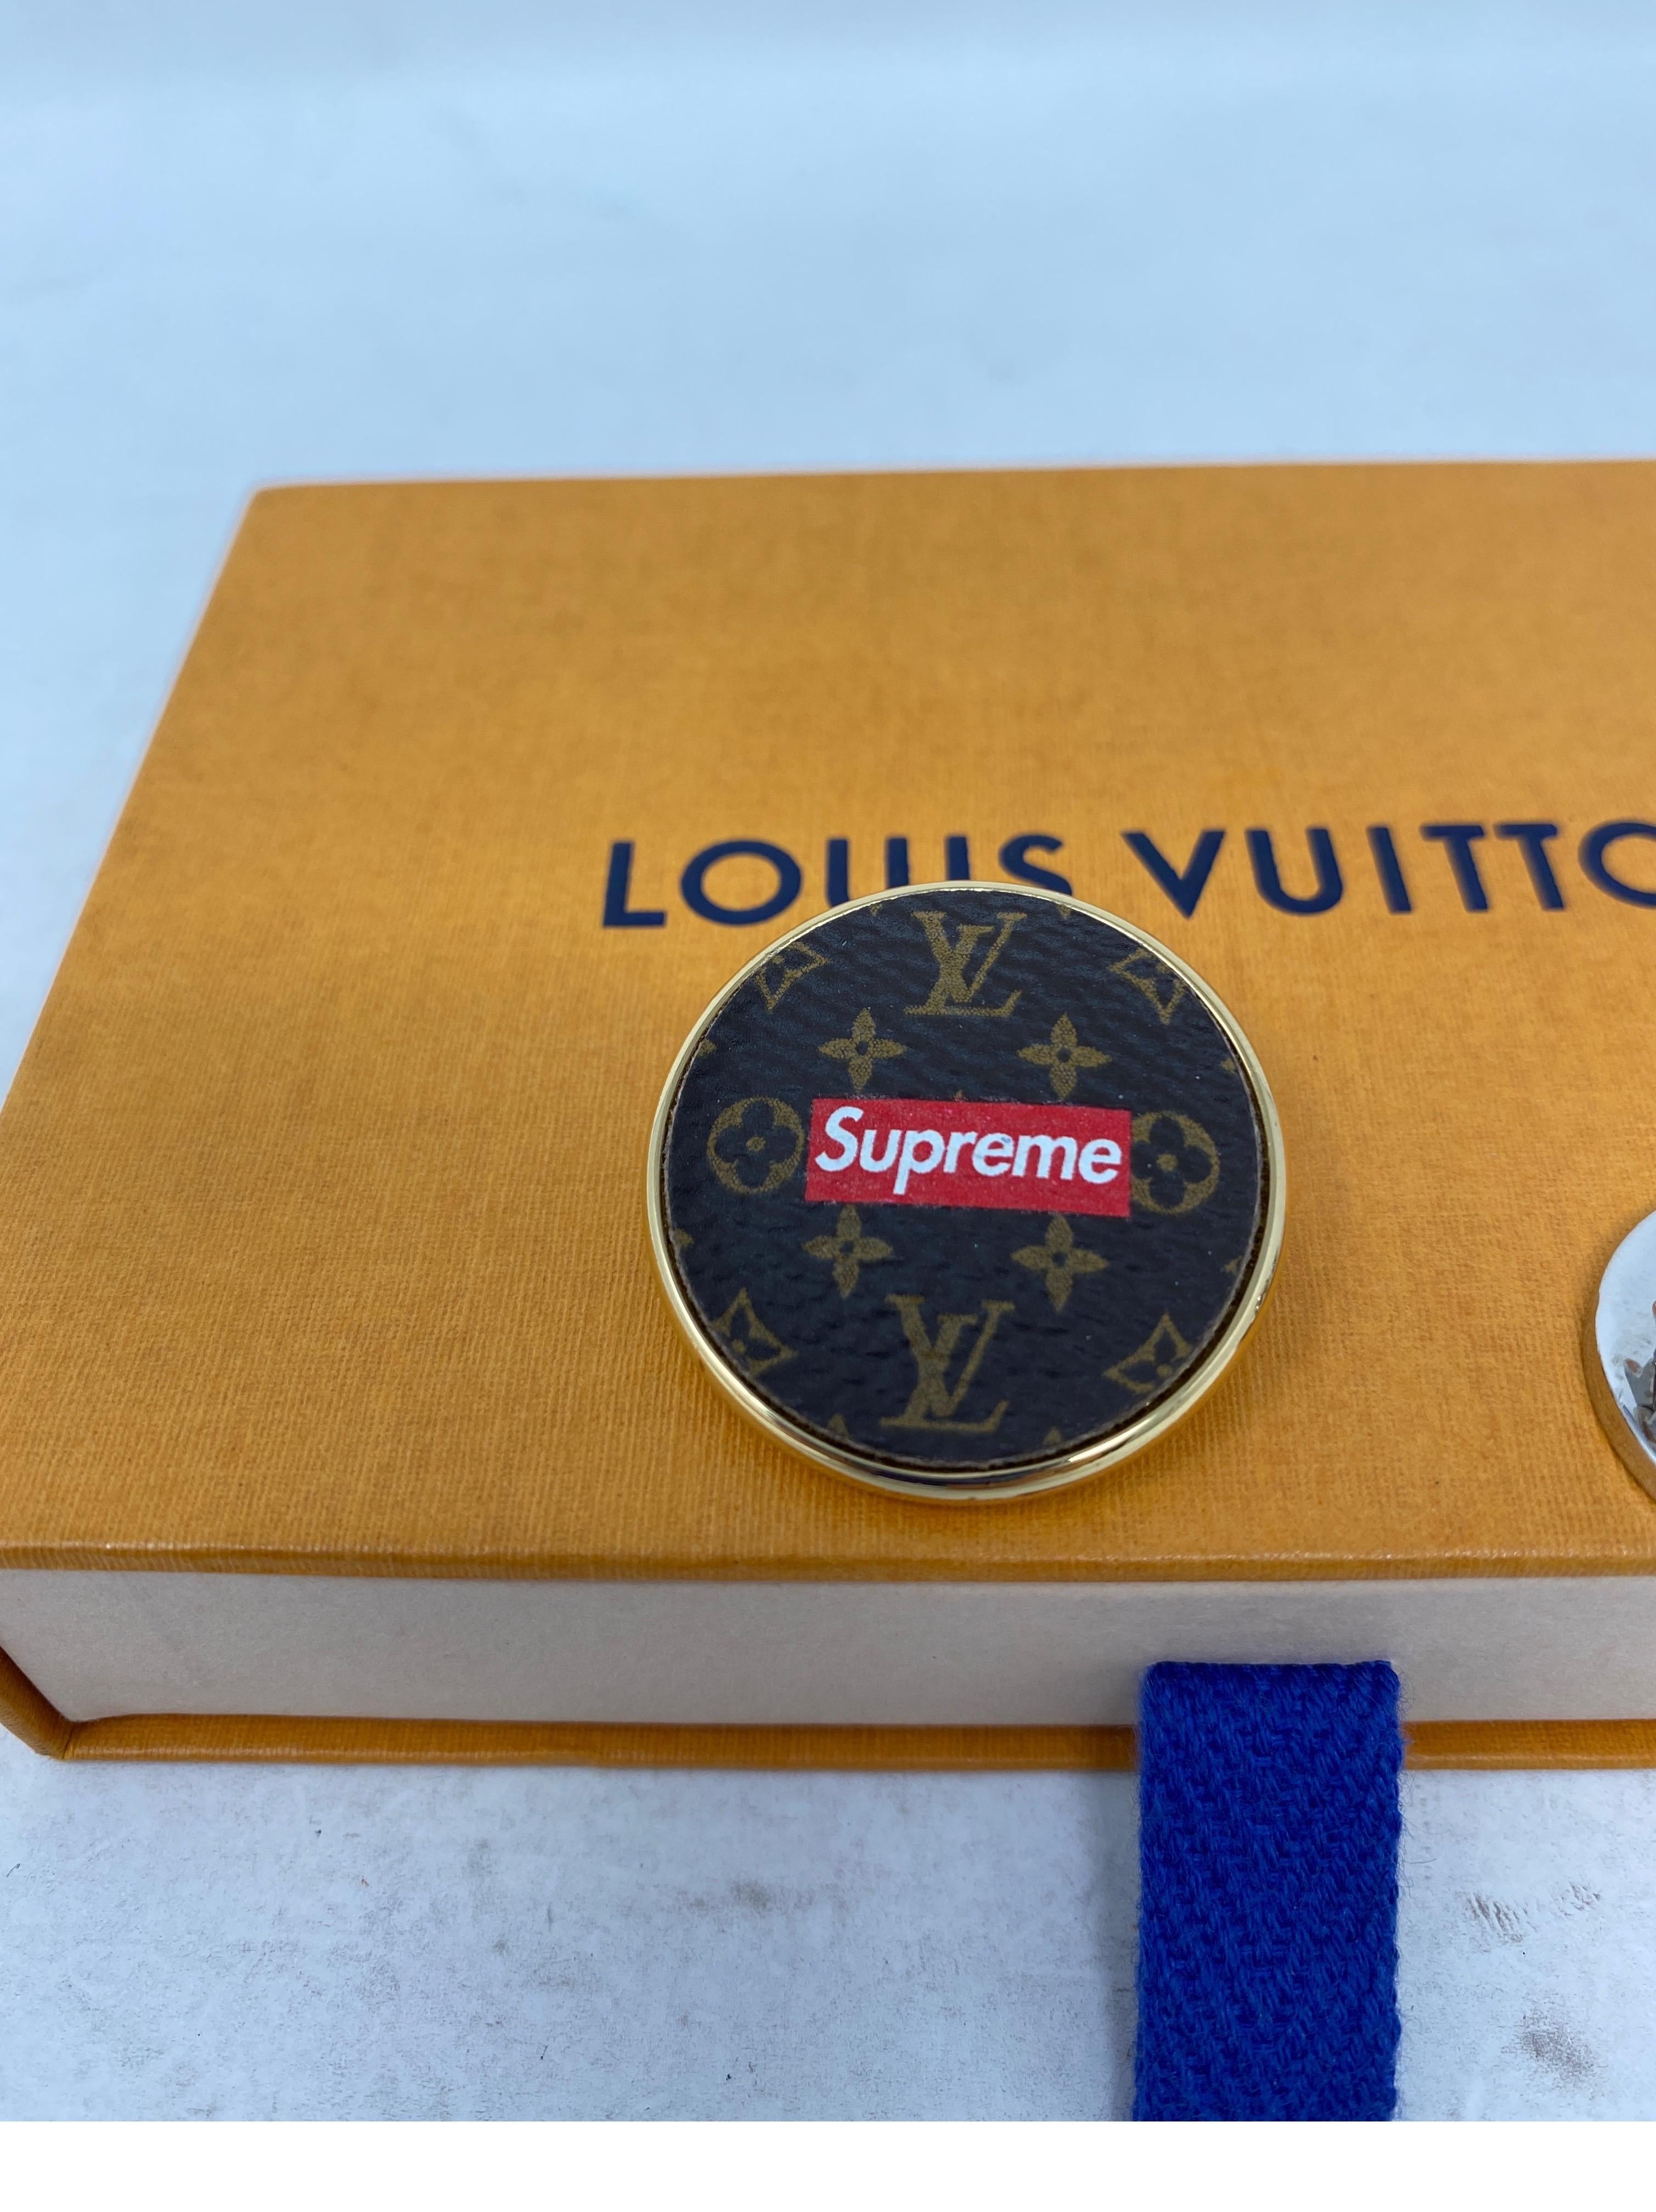 Louis Vuitton Supreme Pin Set 1